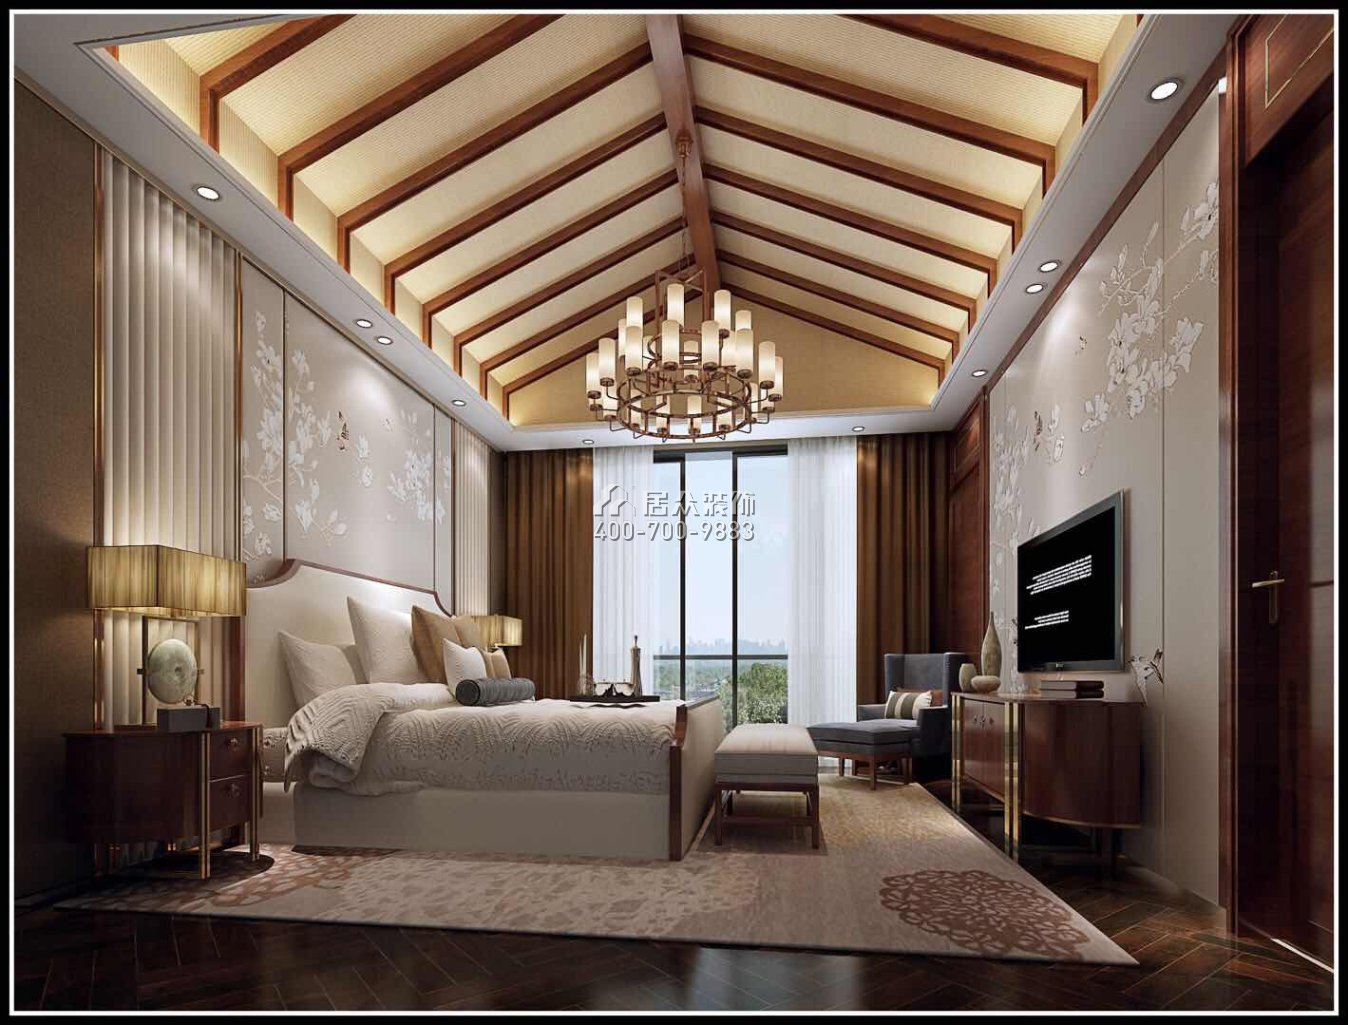 新世紀上河居330平方米中式風格復式戶型臥室裝修效果圖